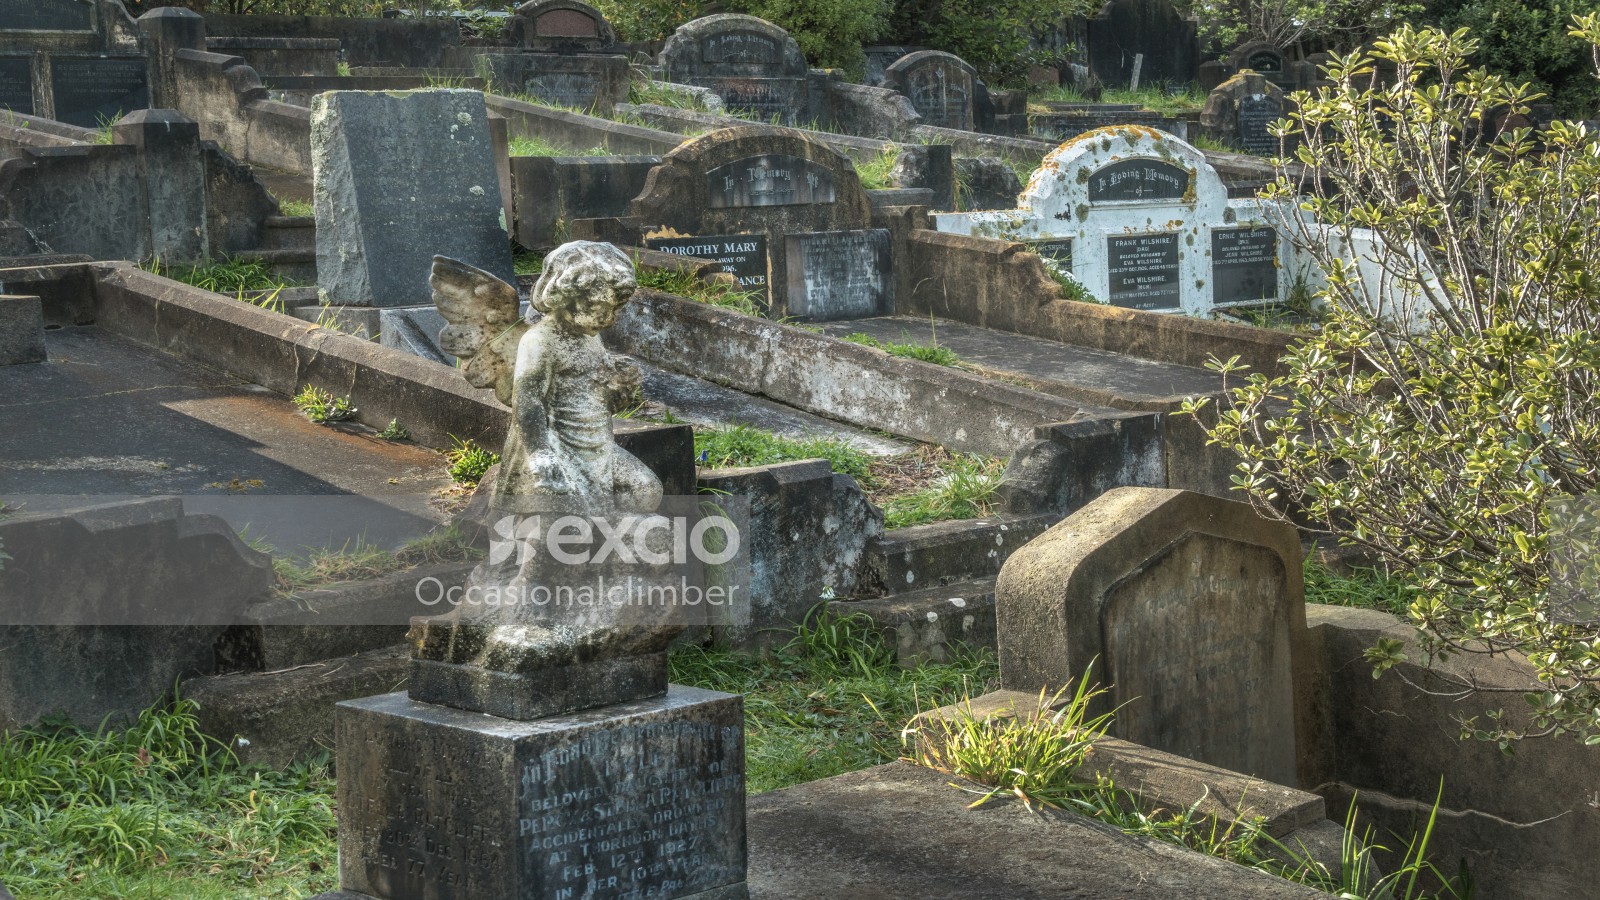  Karori Cemetery